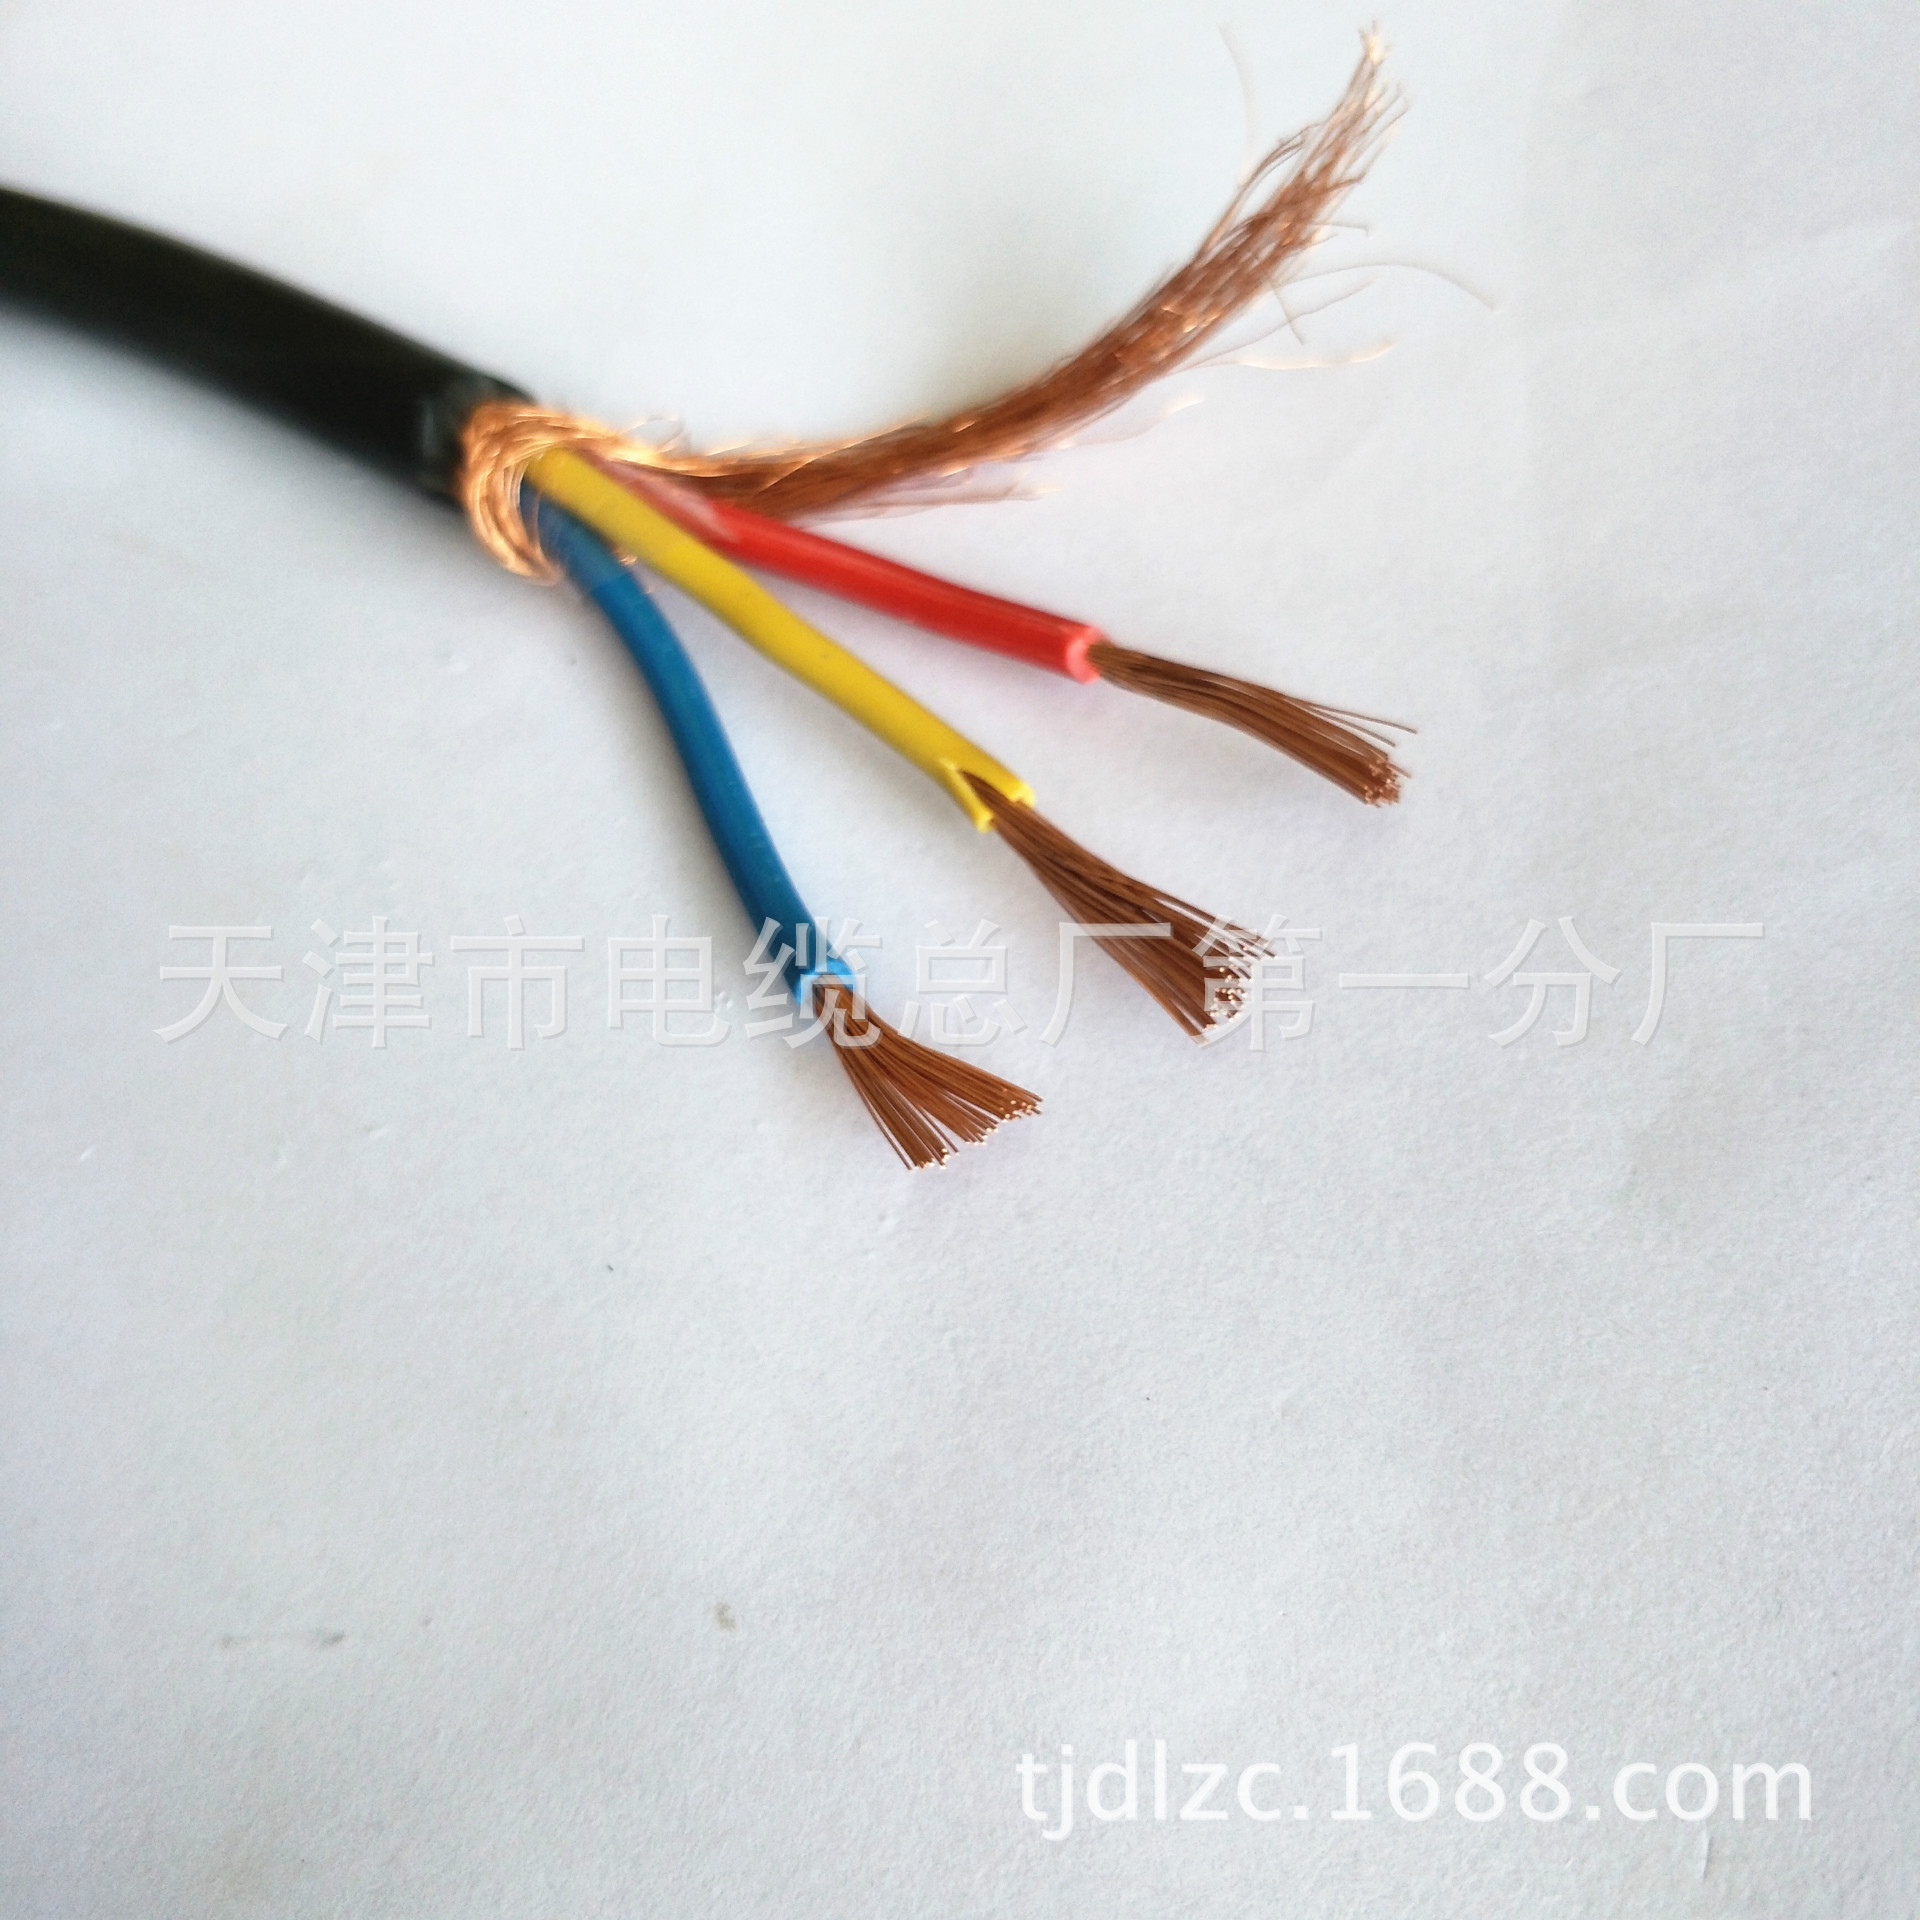 KFFRP22 KFVRP22氟塑料耐高温多心控制电缆 钢带铠装示例图10